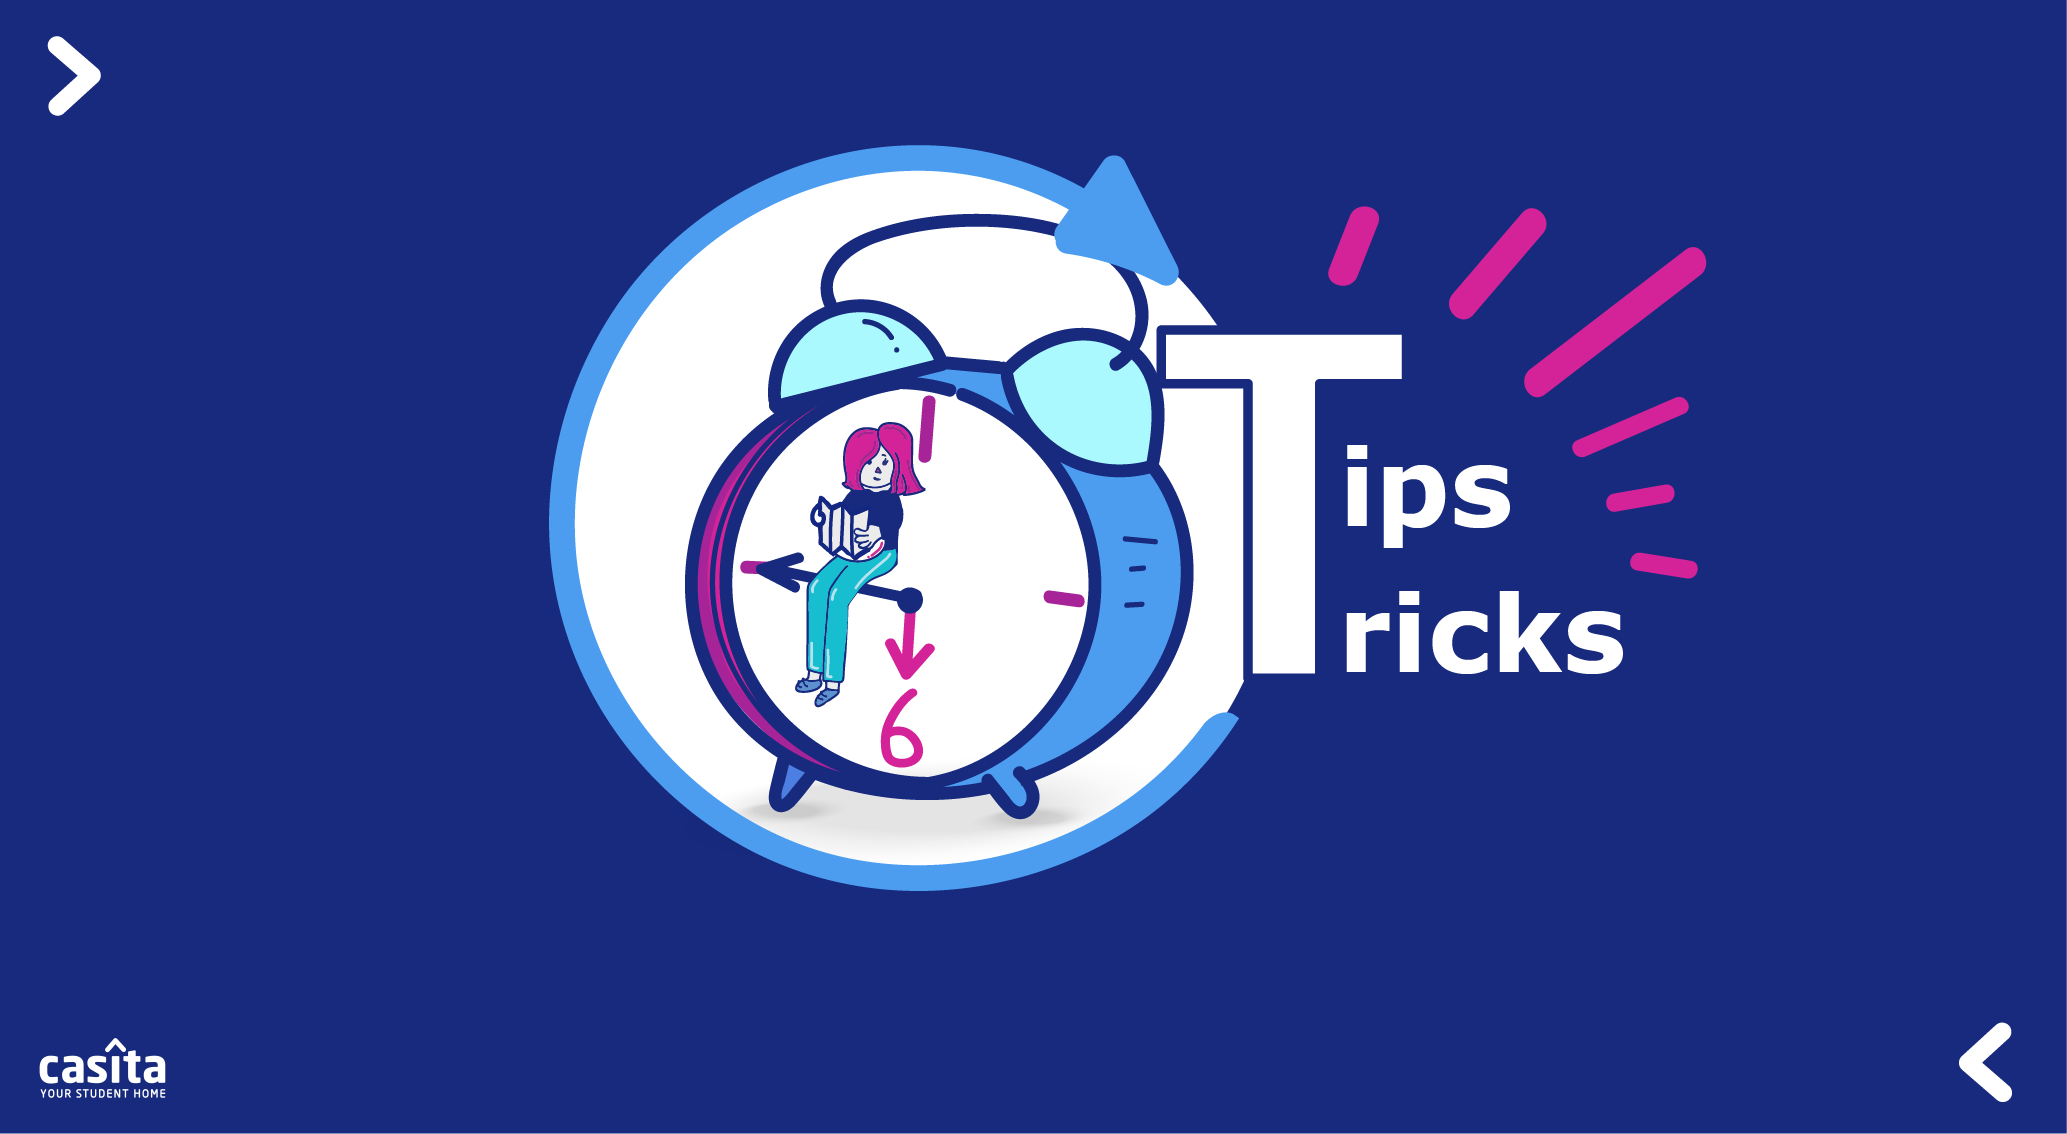 Time Management Tips & Tricks